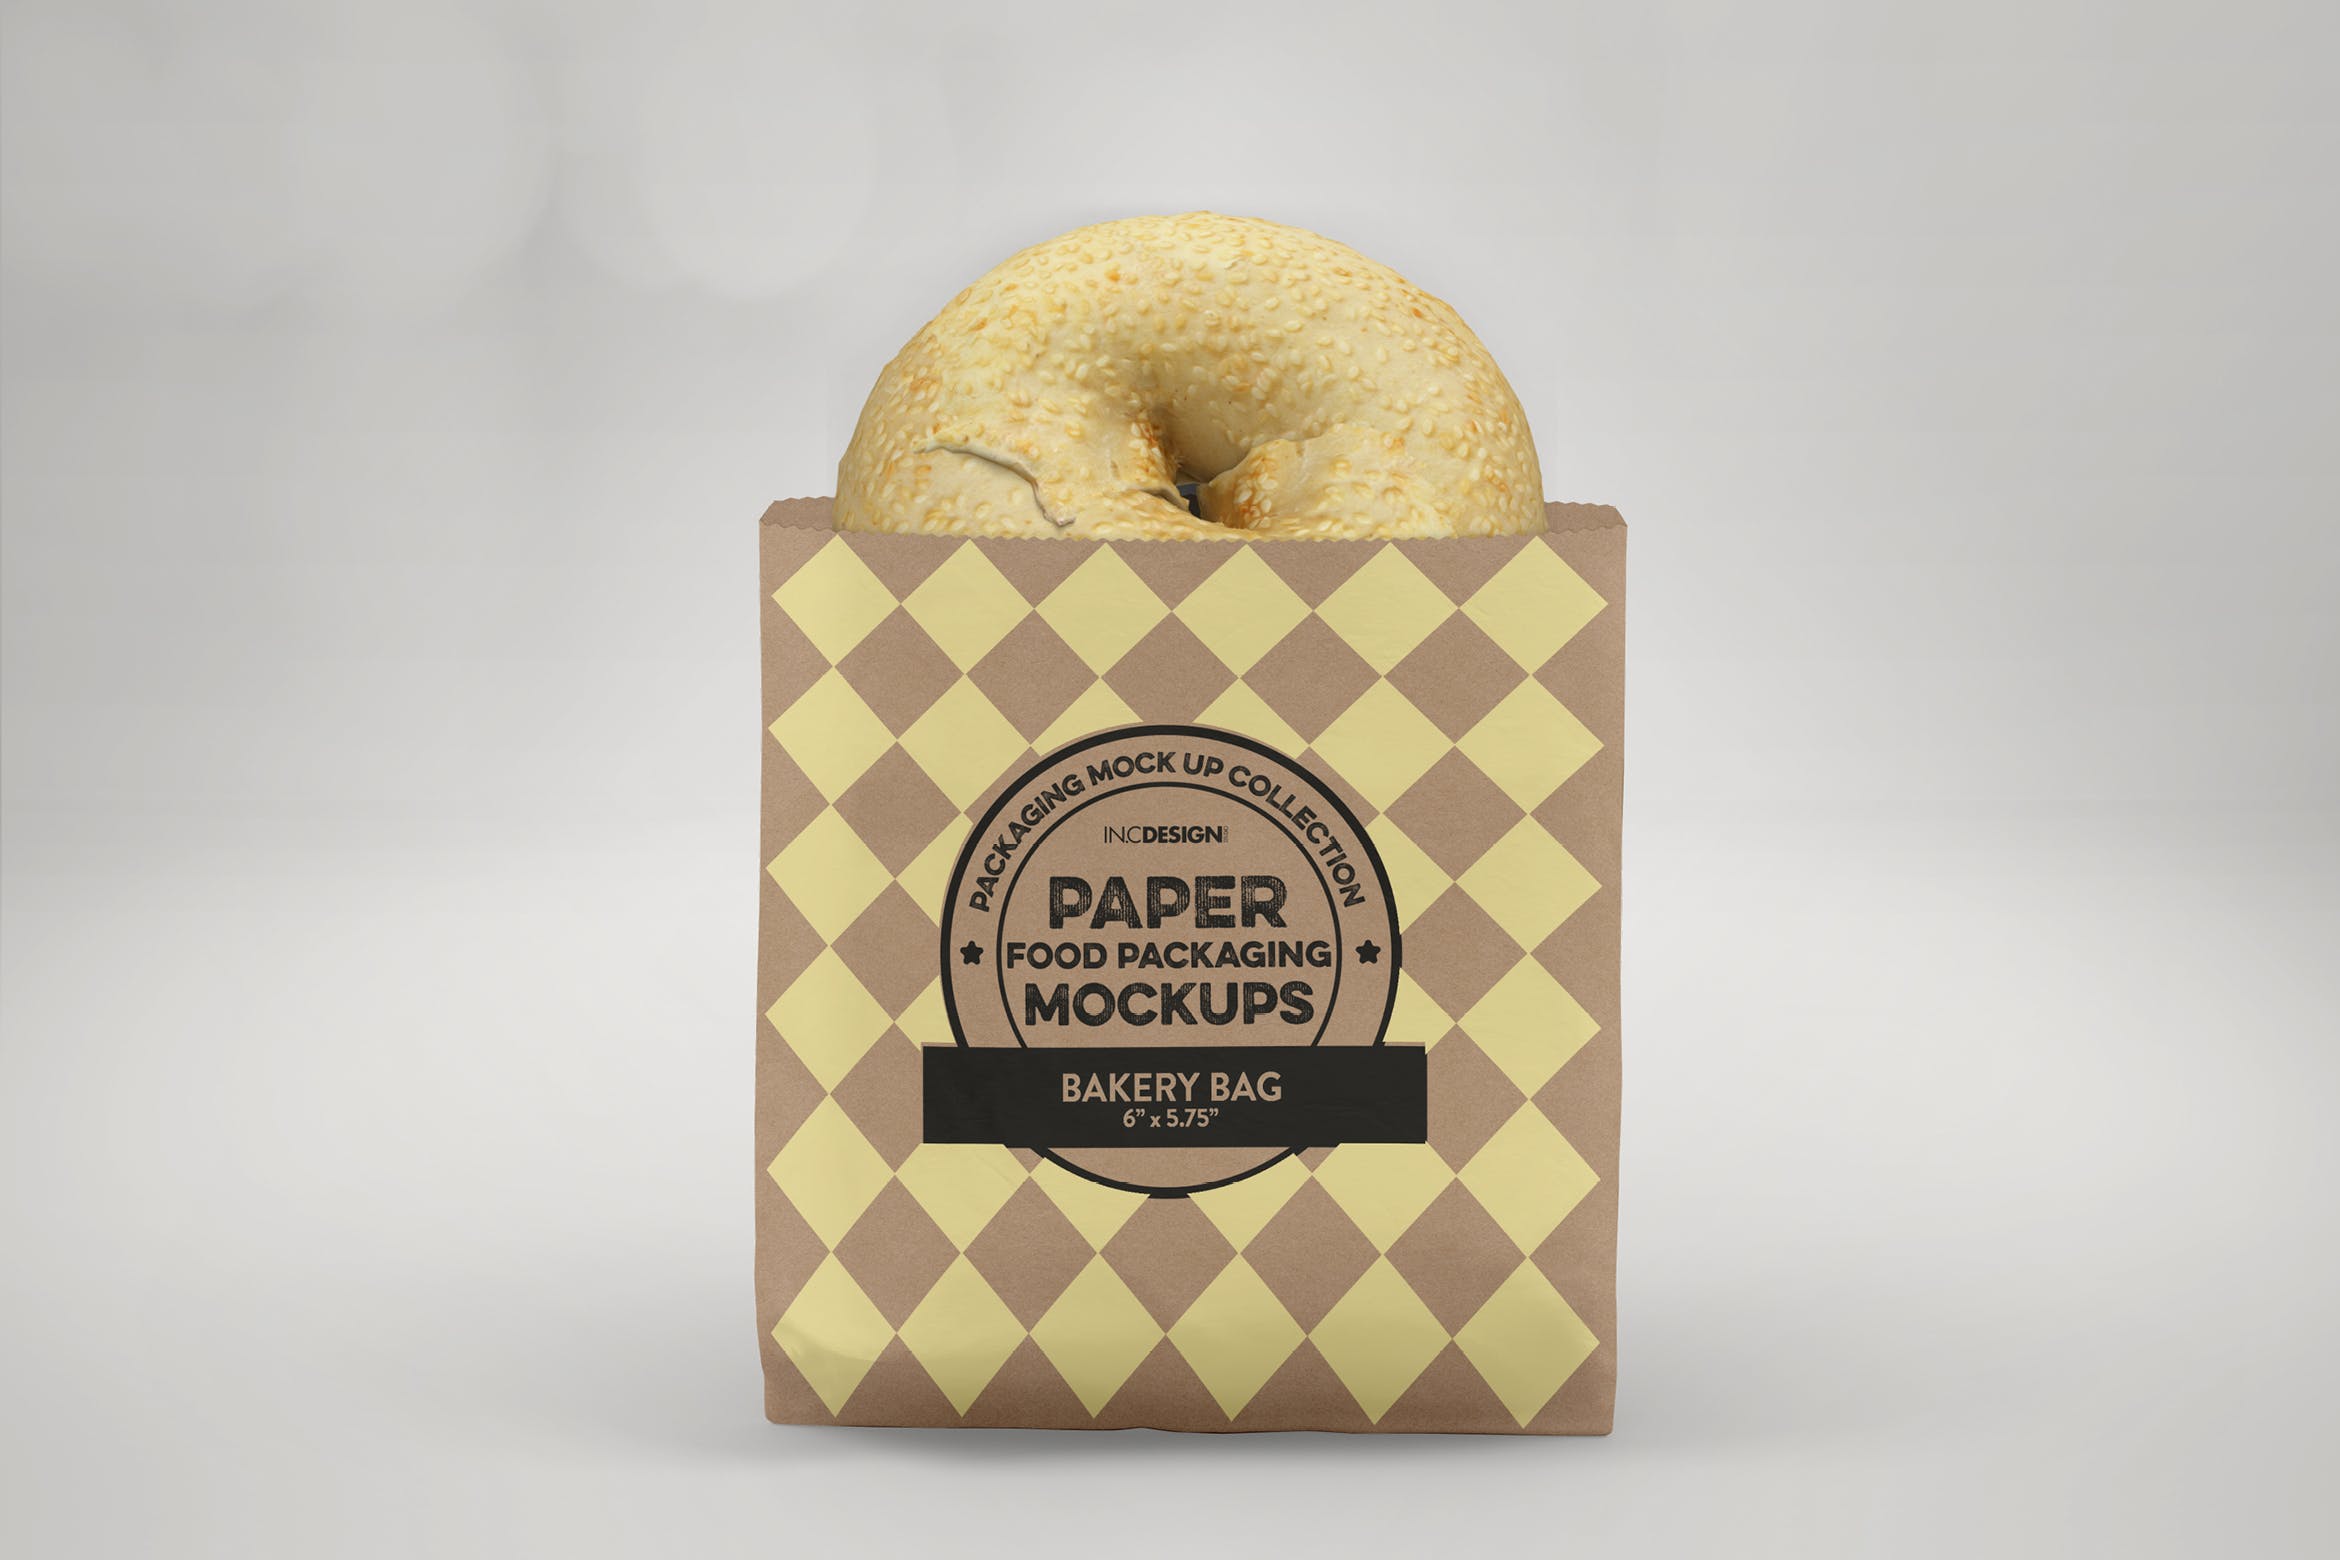 面包外带包装纸袋设计图第一素材精选 Flat Bakery Bag Packaging Mockup插图